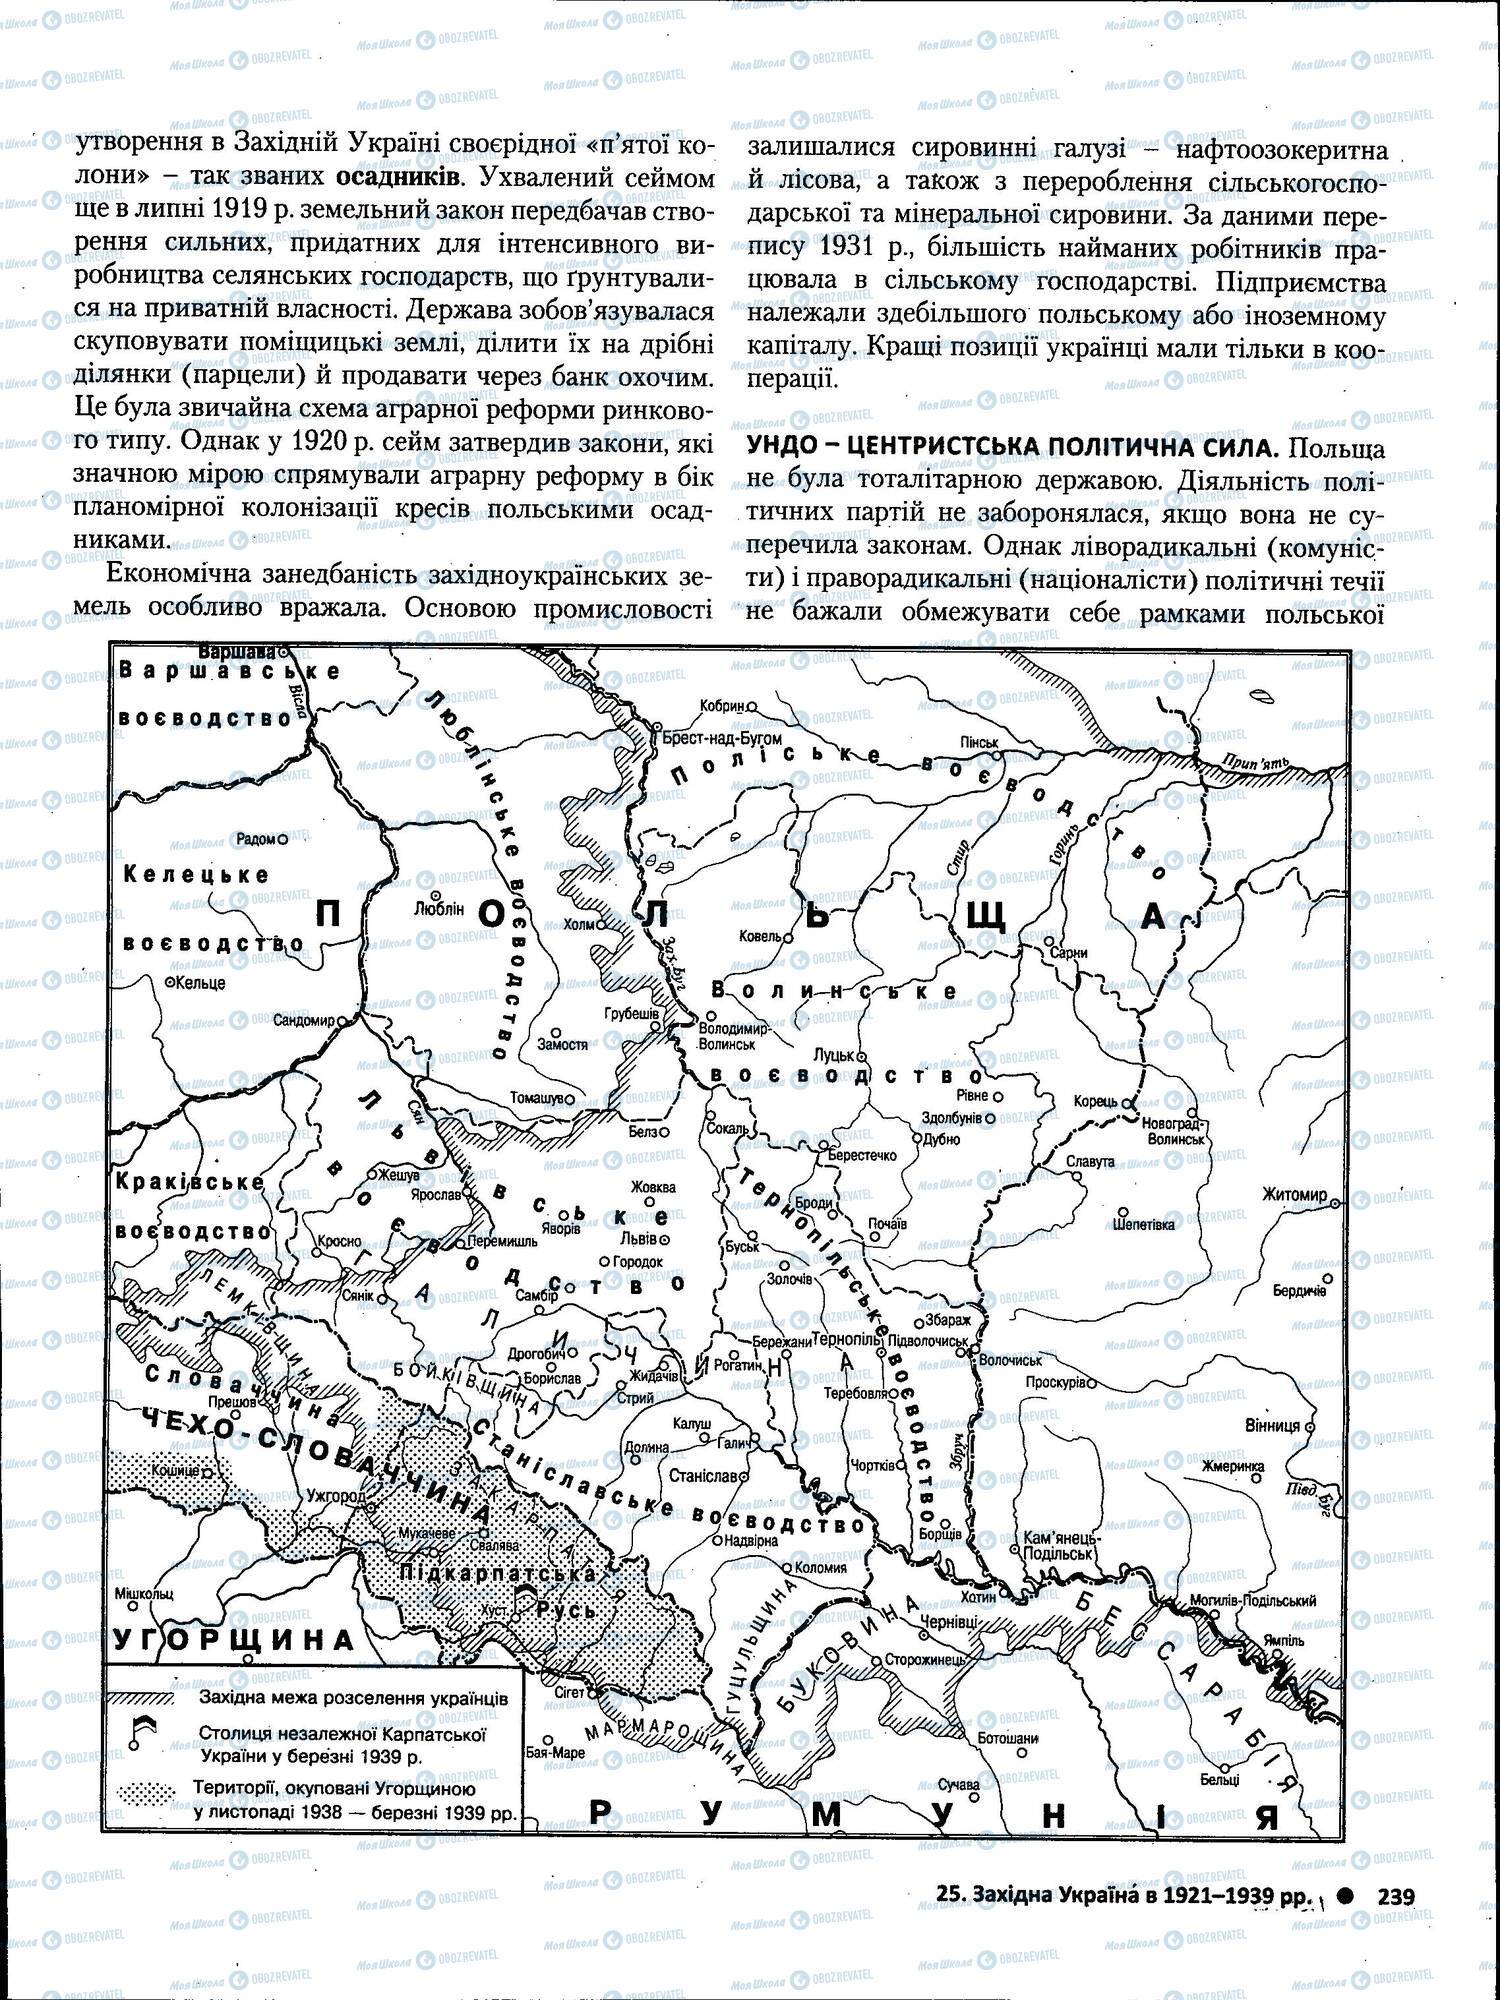 ЗНО История Украины 11 класс страница 239